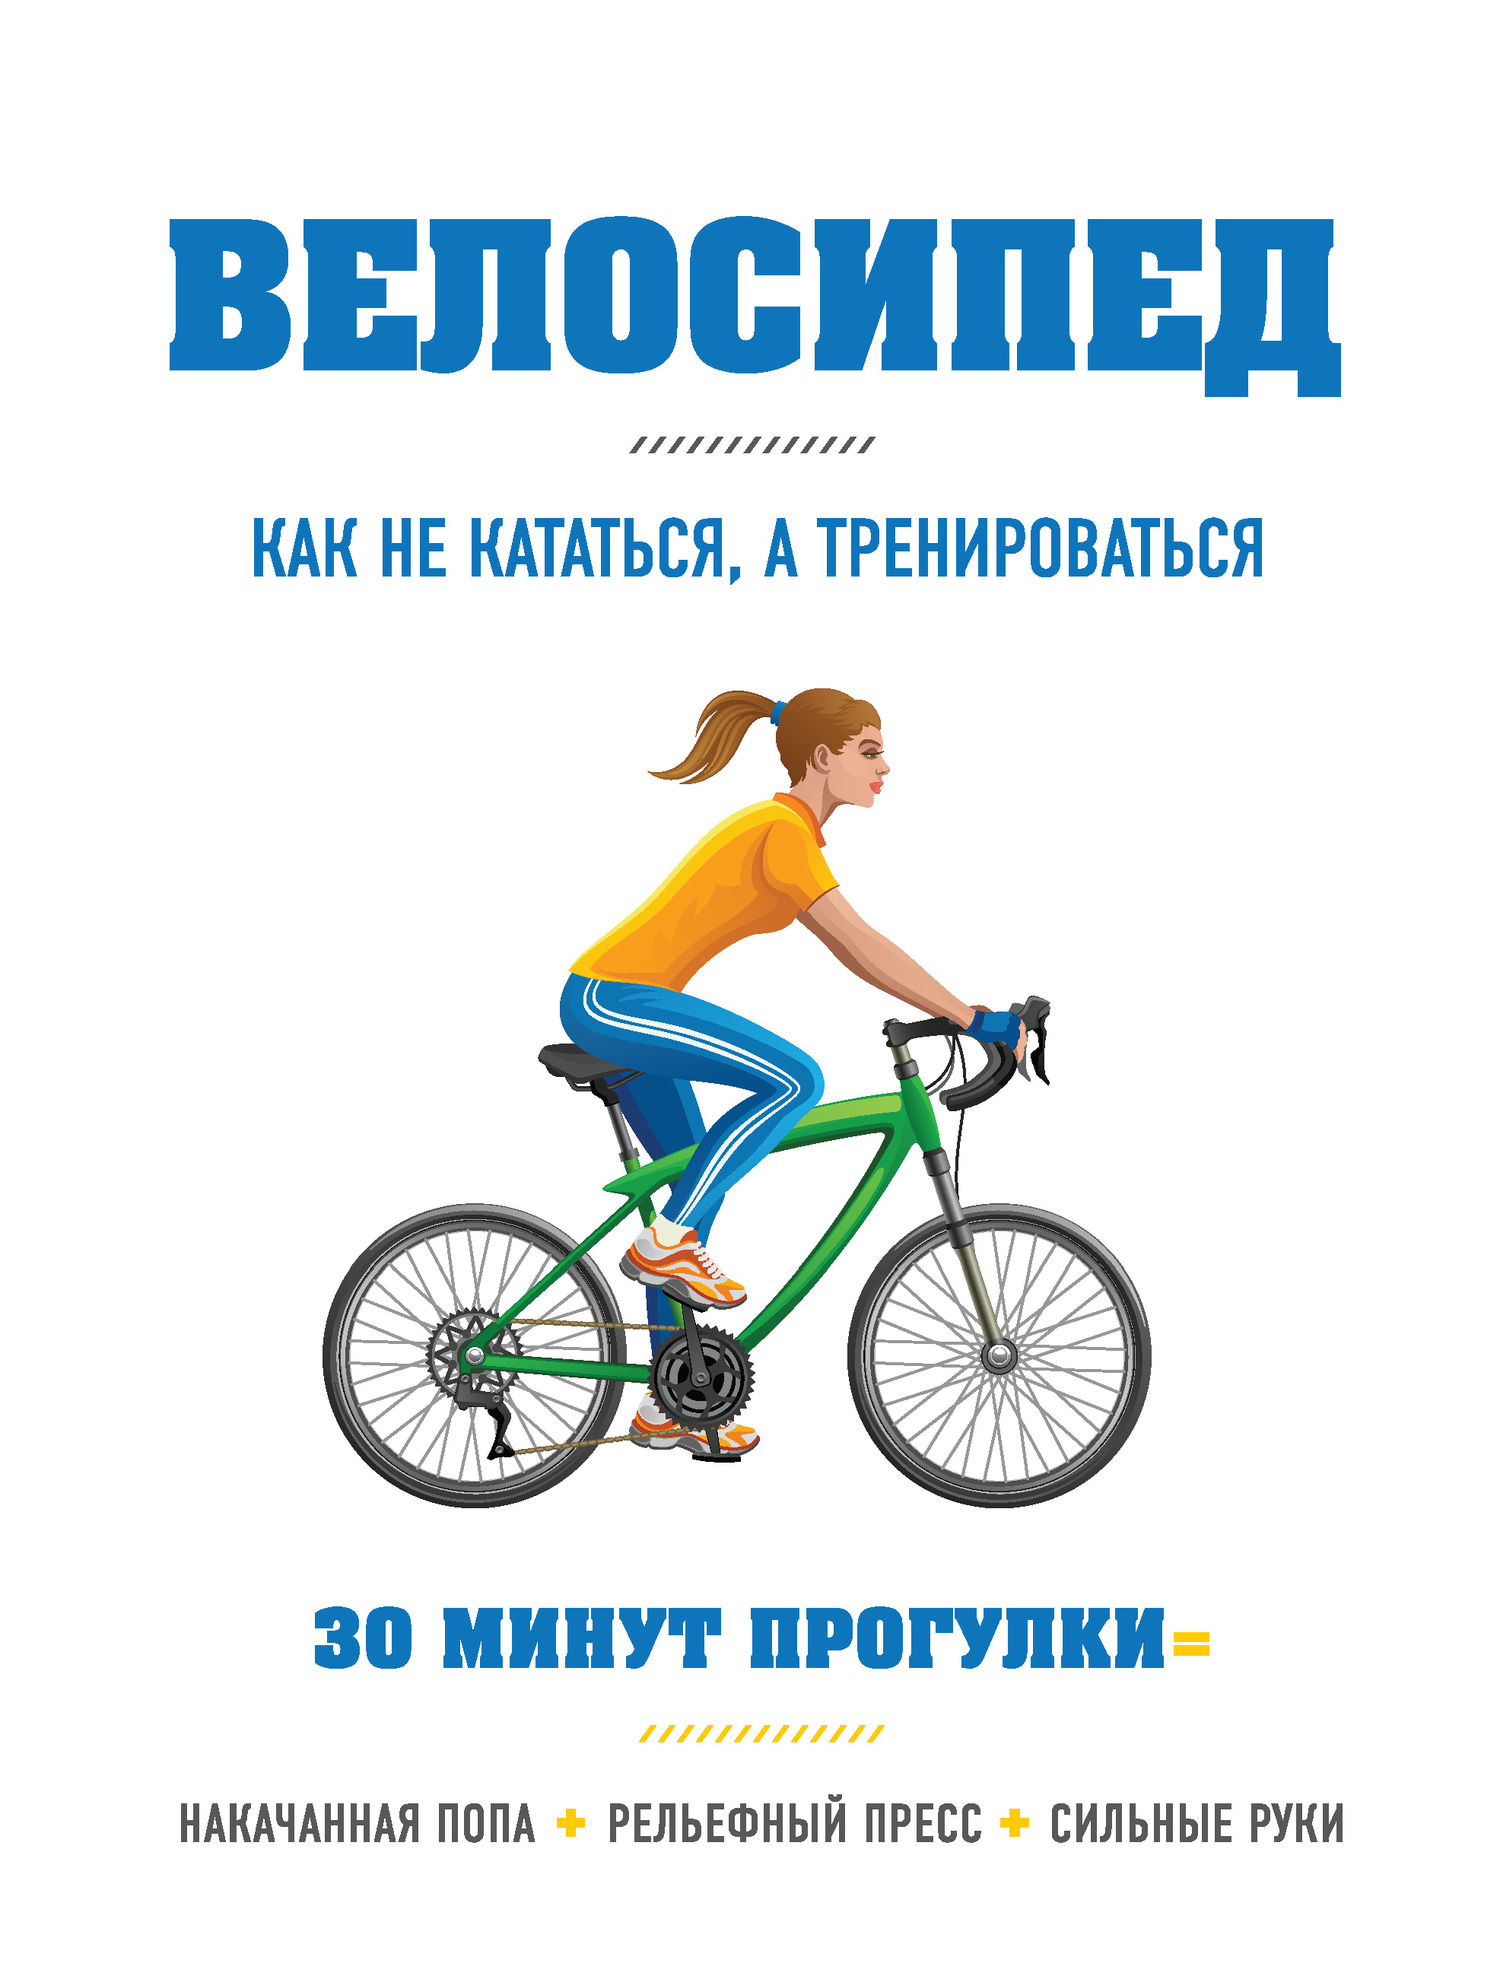 Хьюитт Бен - Велосипед: как не кататься, а тренироваться скачать бесплатно